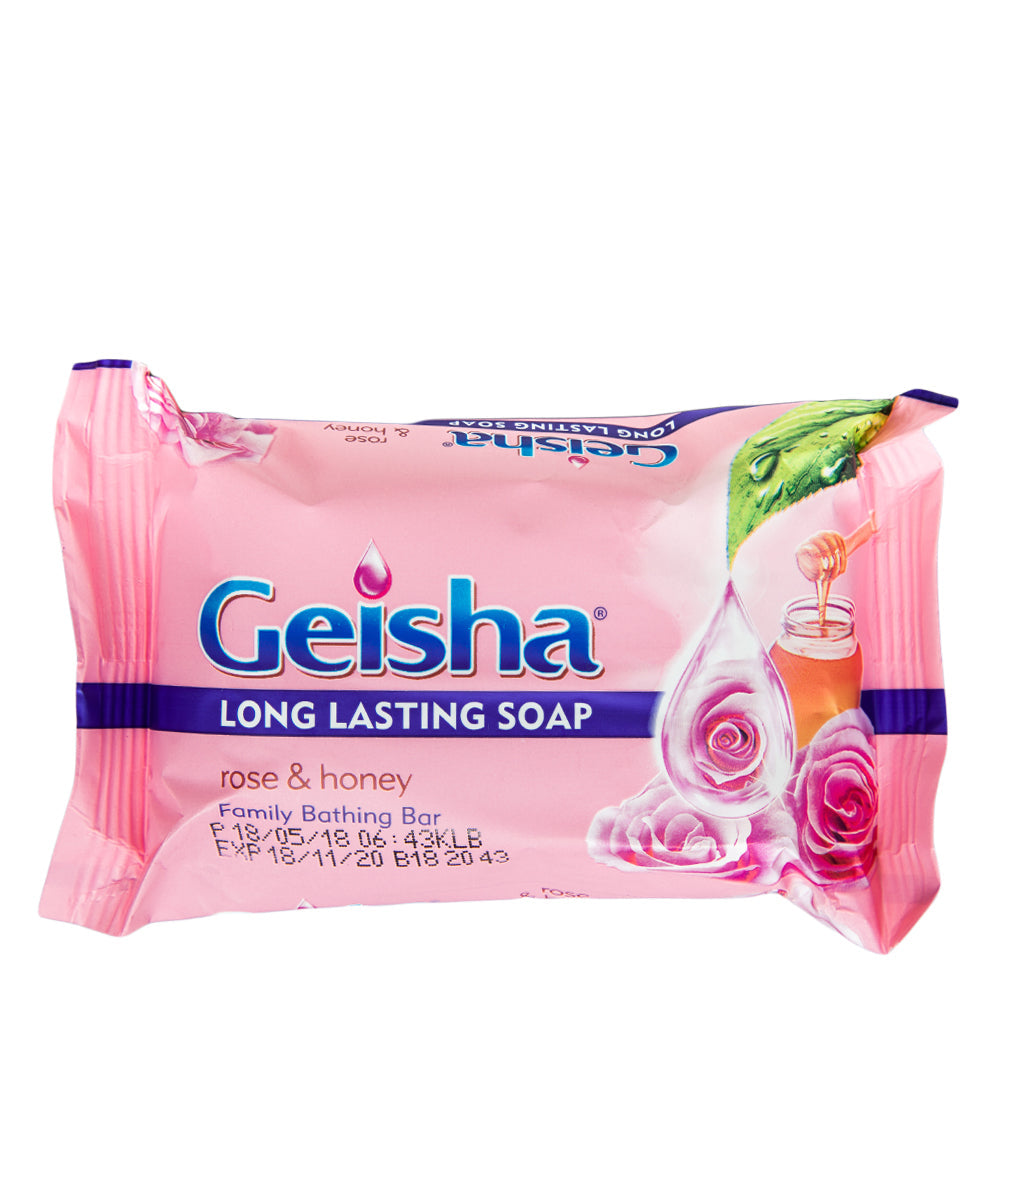 225 gram wrap of geisha fragrant rose & honey soap